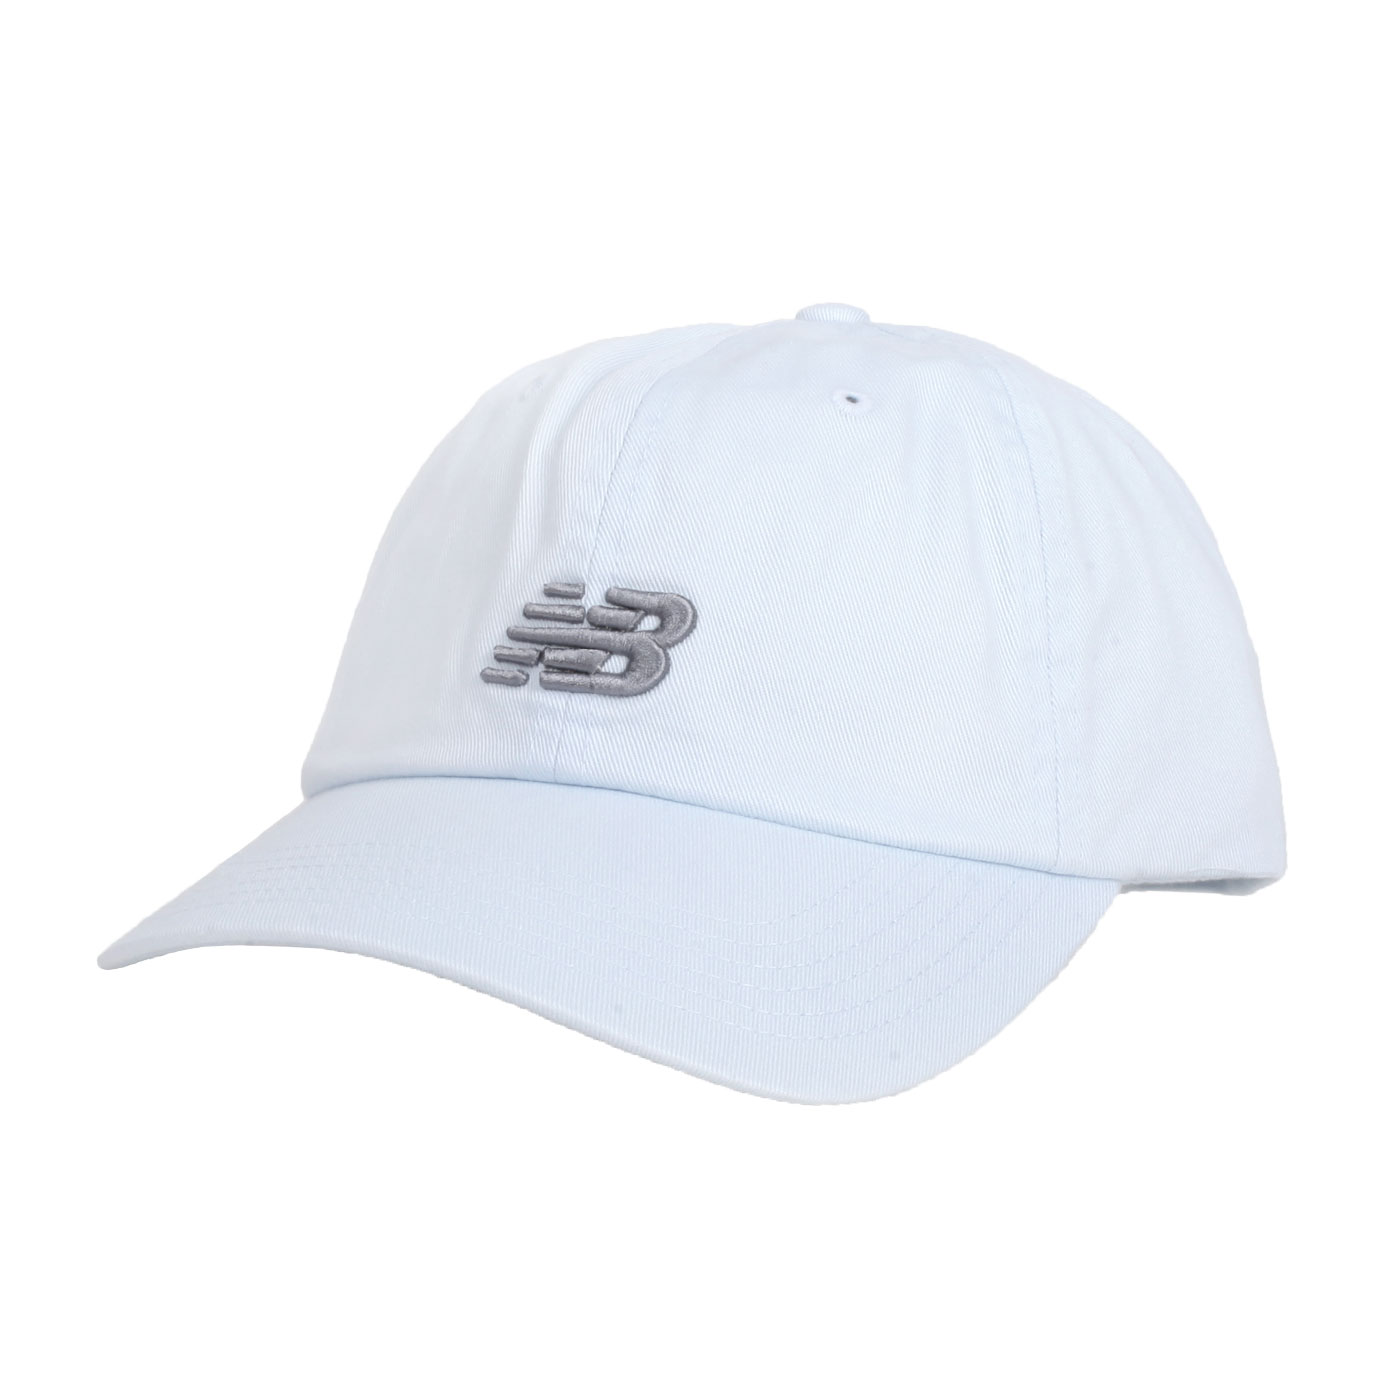 NEW BALANCE 棒球帽  LAH91014IB - 淺藍灰